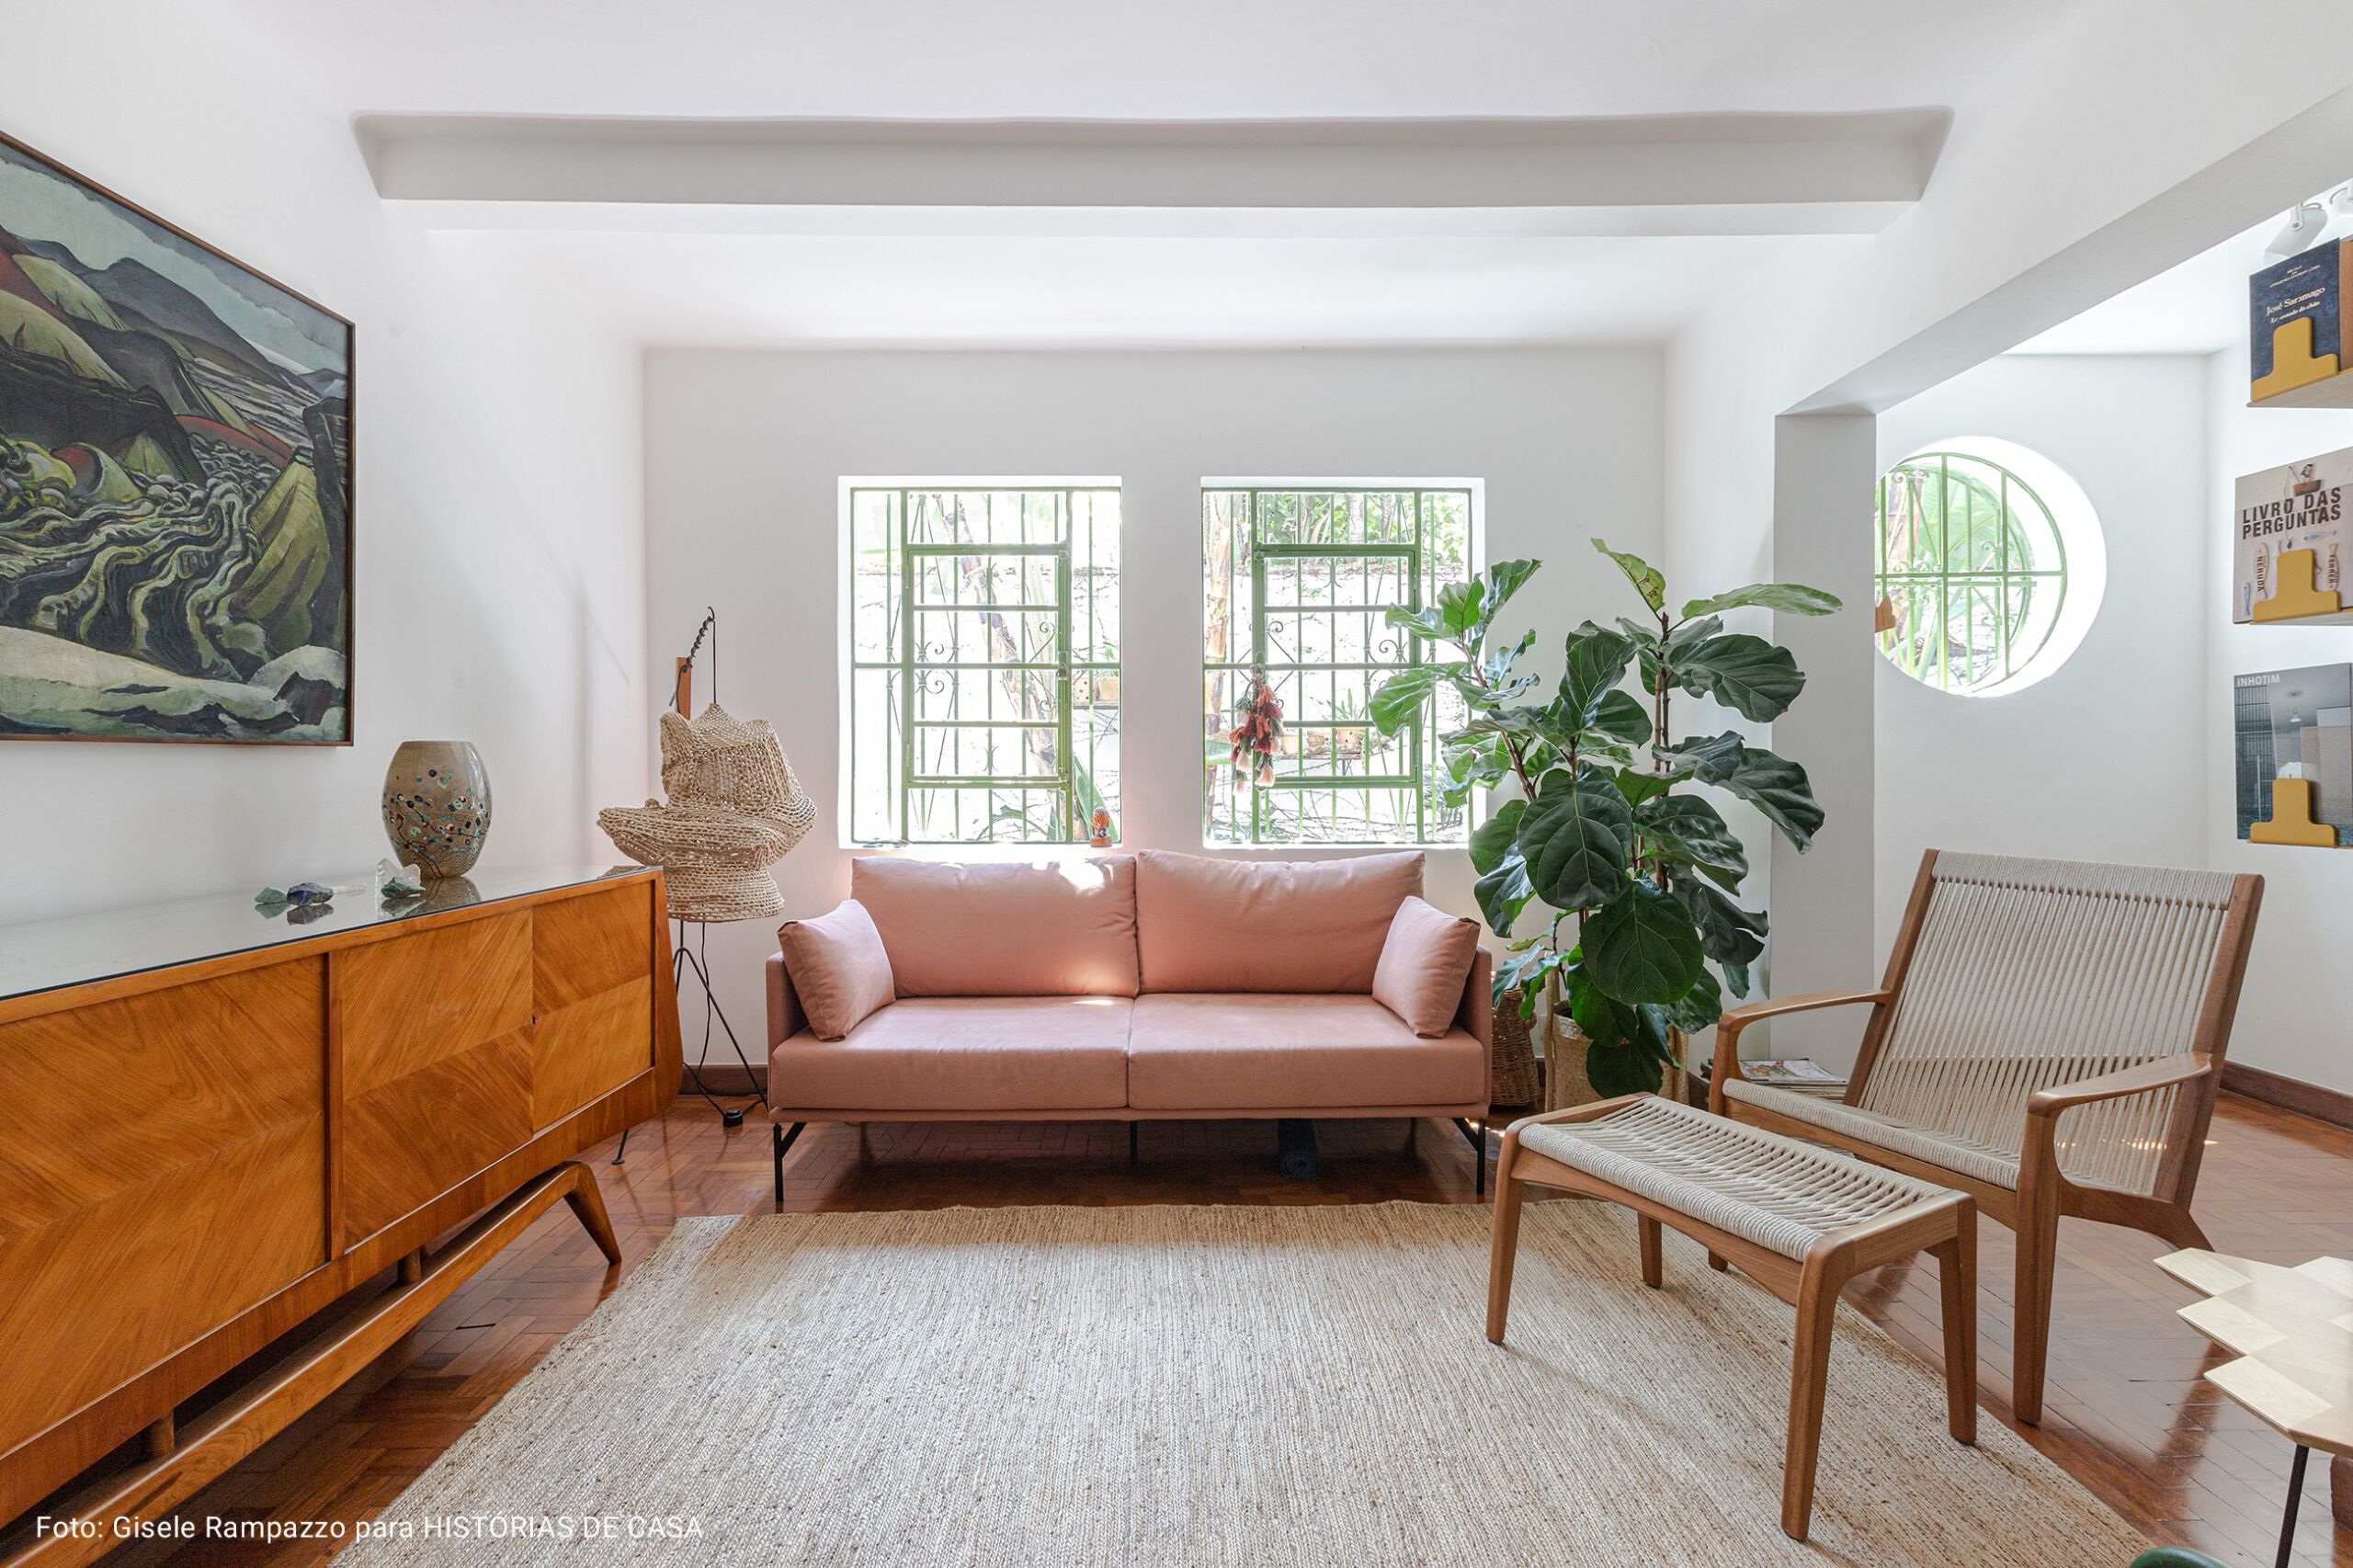 Sala de estar com sofá rosa claro e tapete neutro